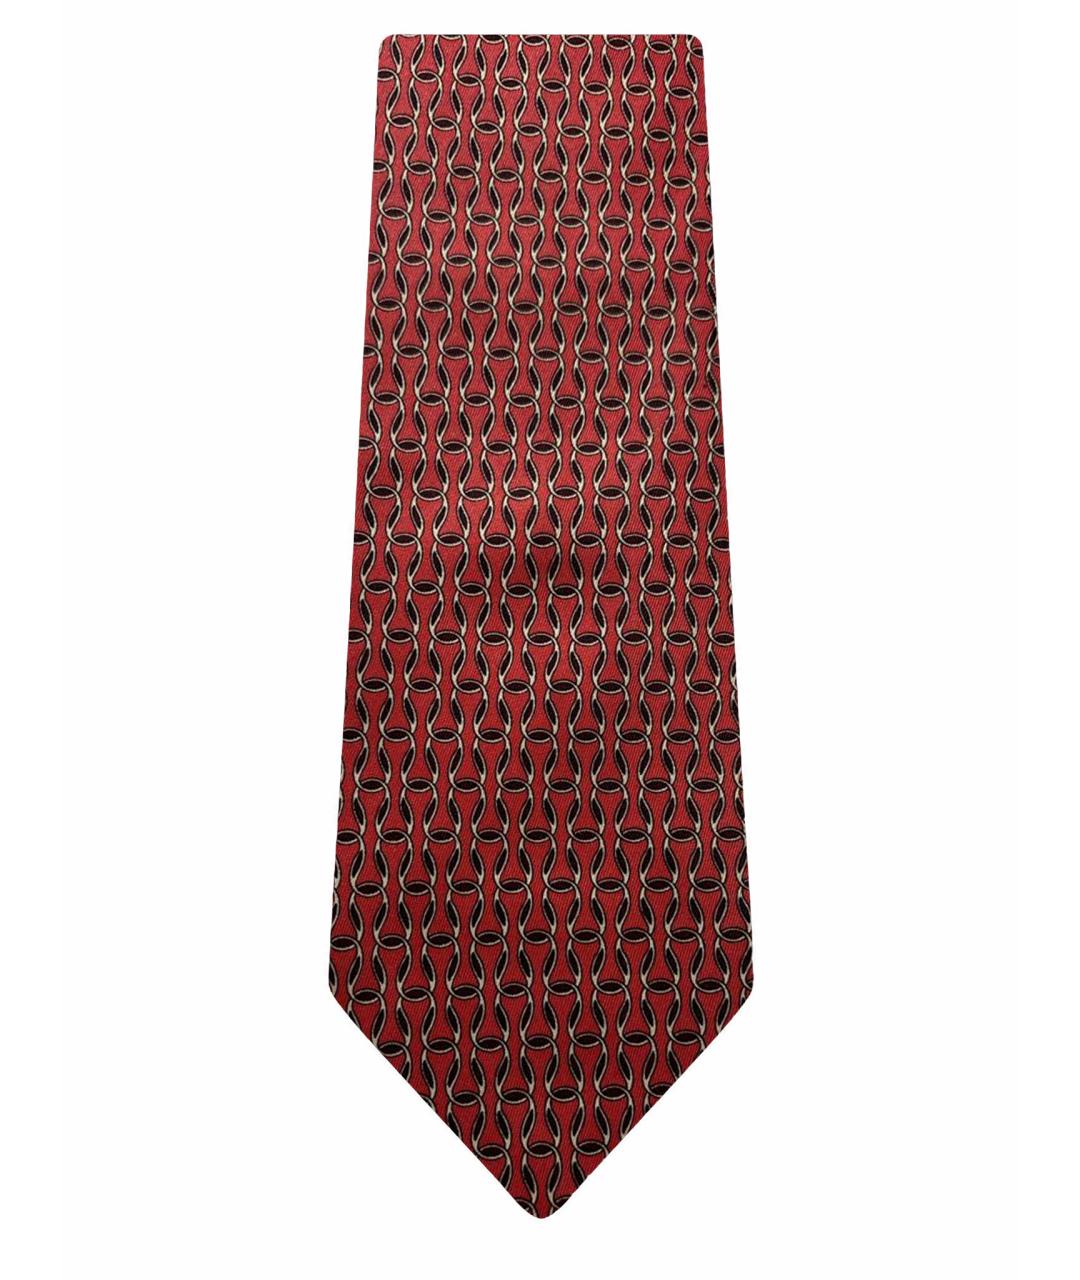 HERMES PRE-OWNED Красный шелковый галстук, фото 1